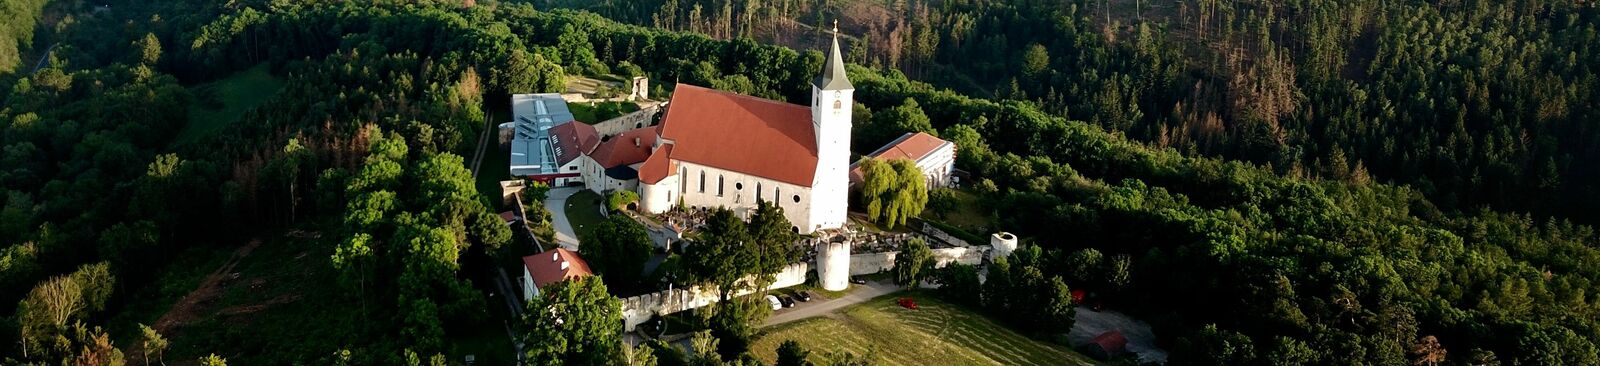 Kloster Pernegg im niederösterreichischen Waldviertel